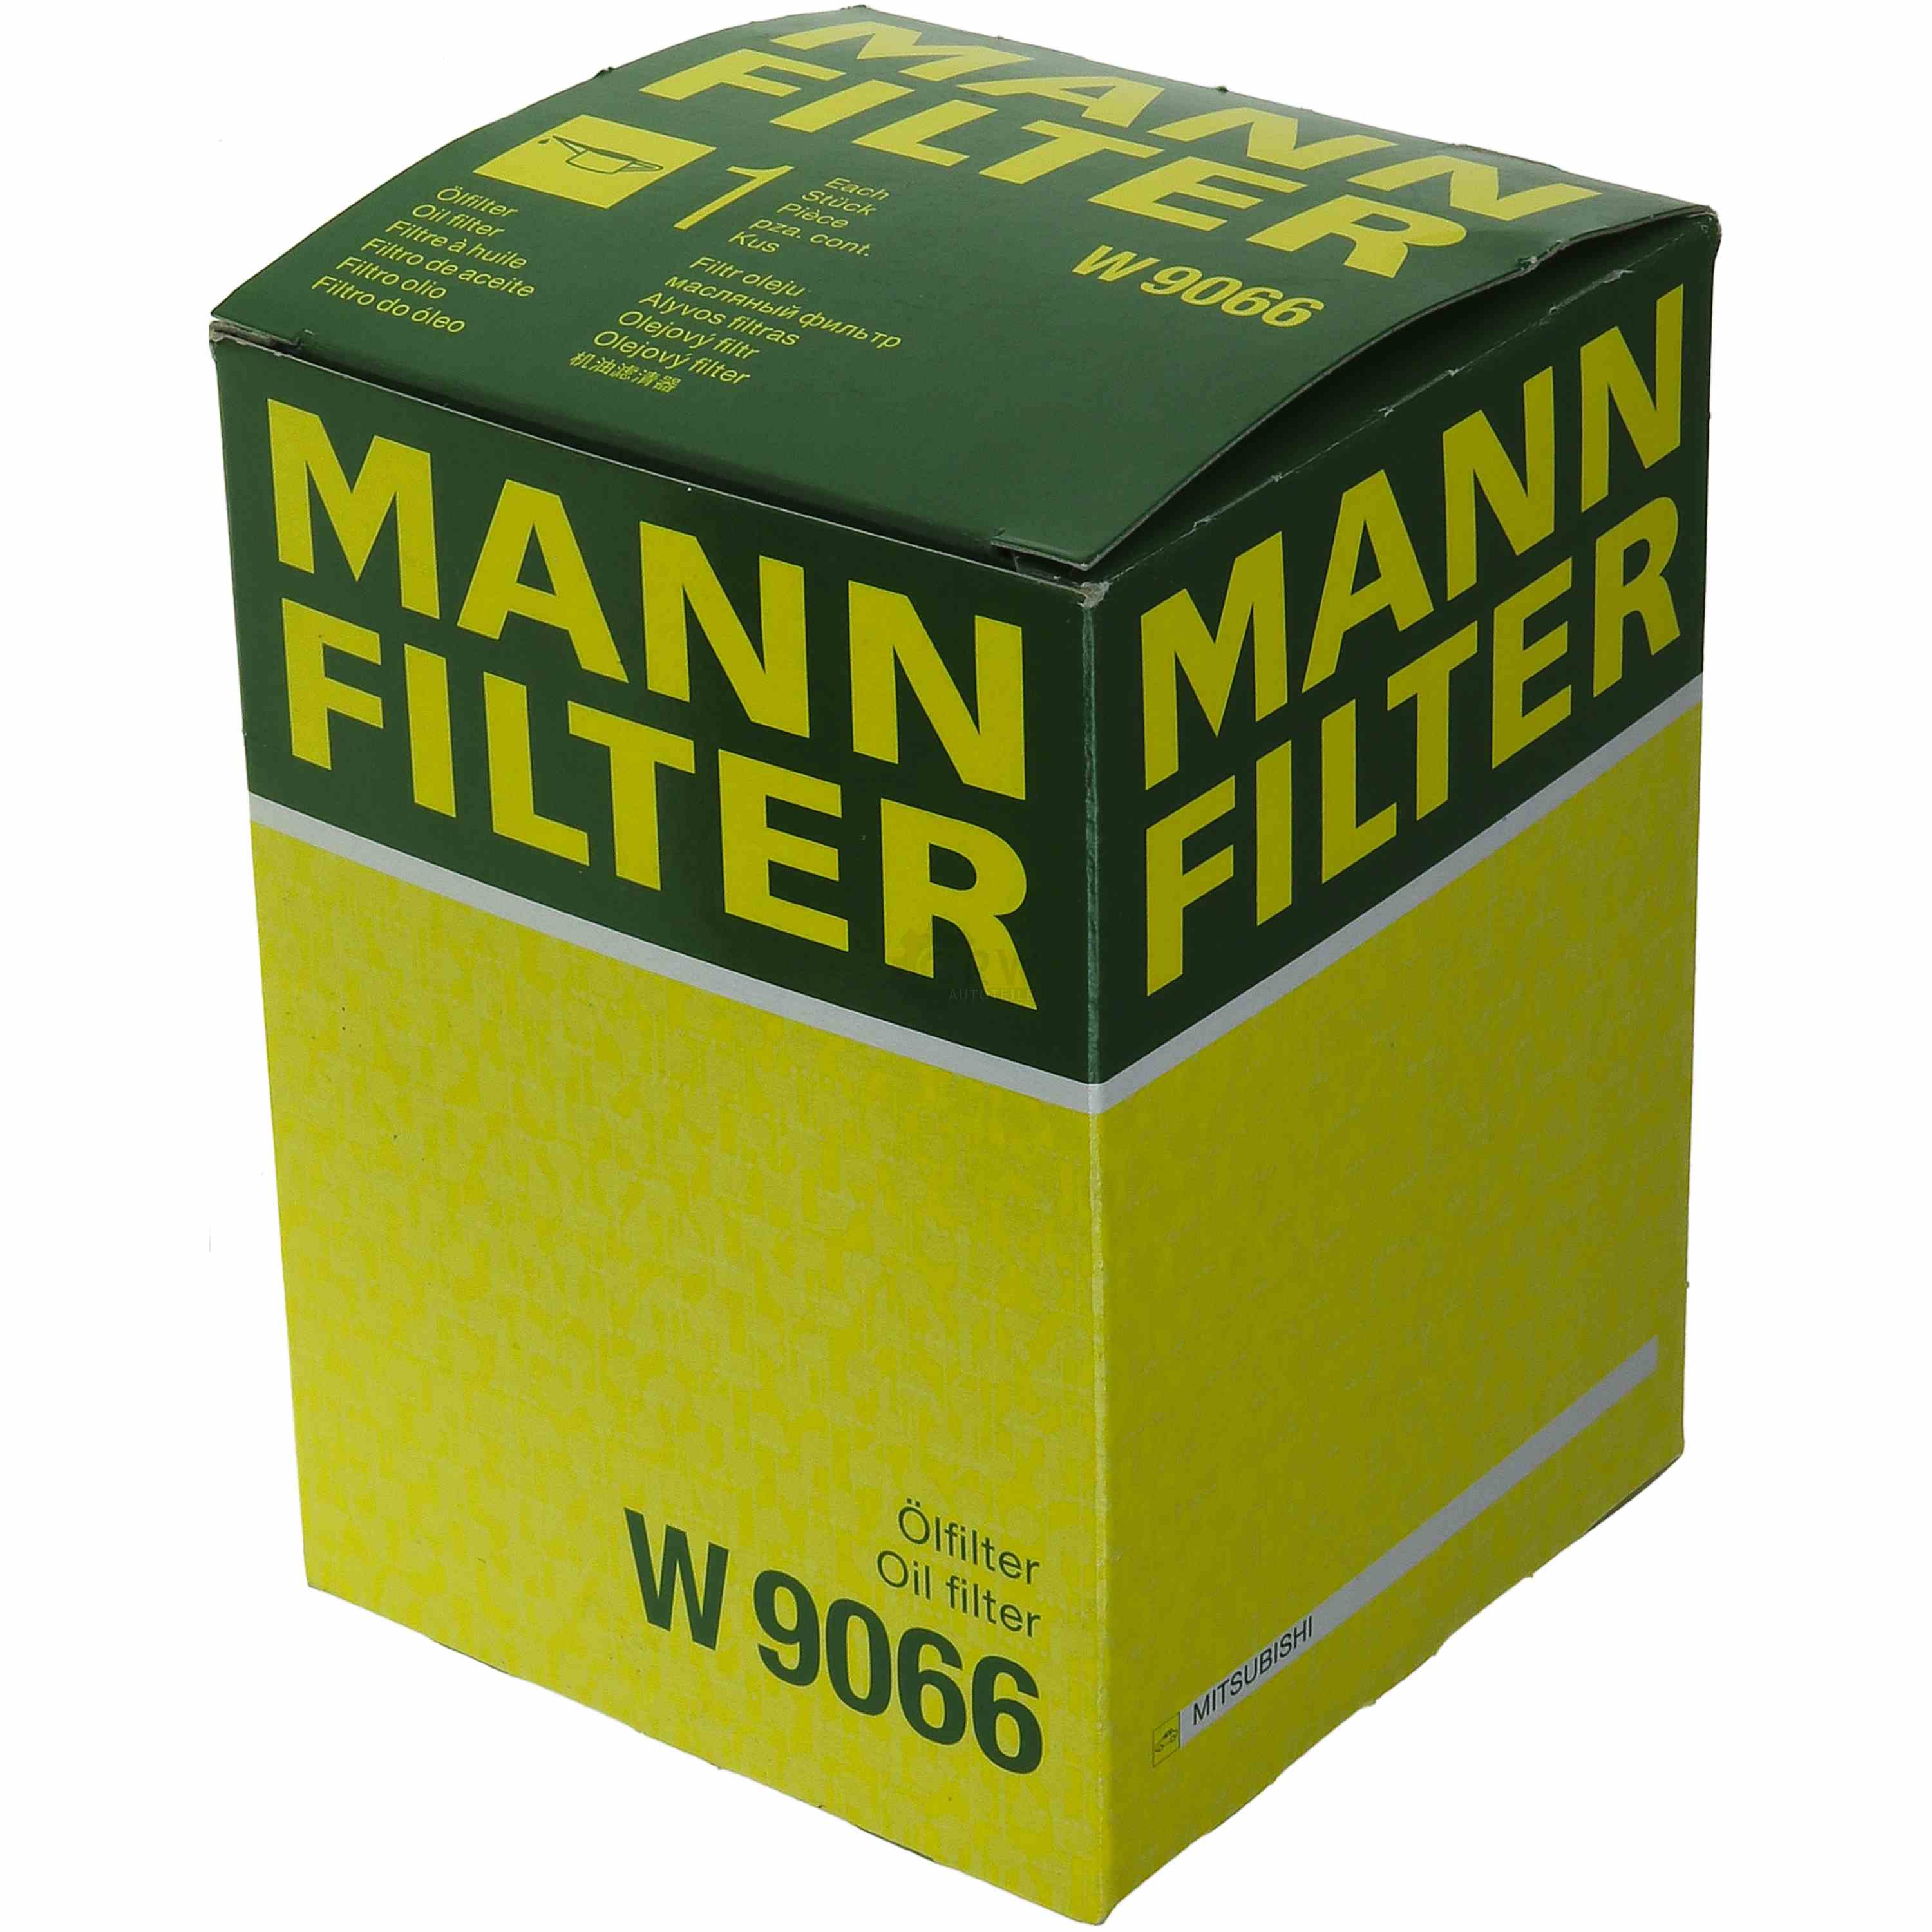 MANN-FILTER Ölfilter W 9066 Oil Filter